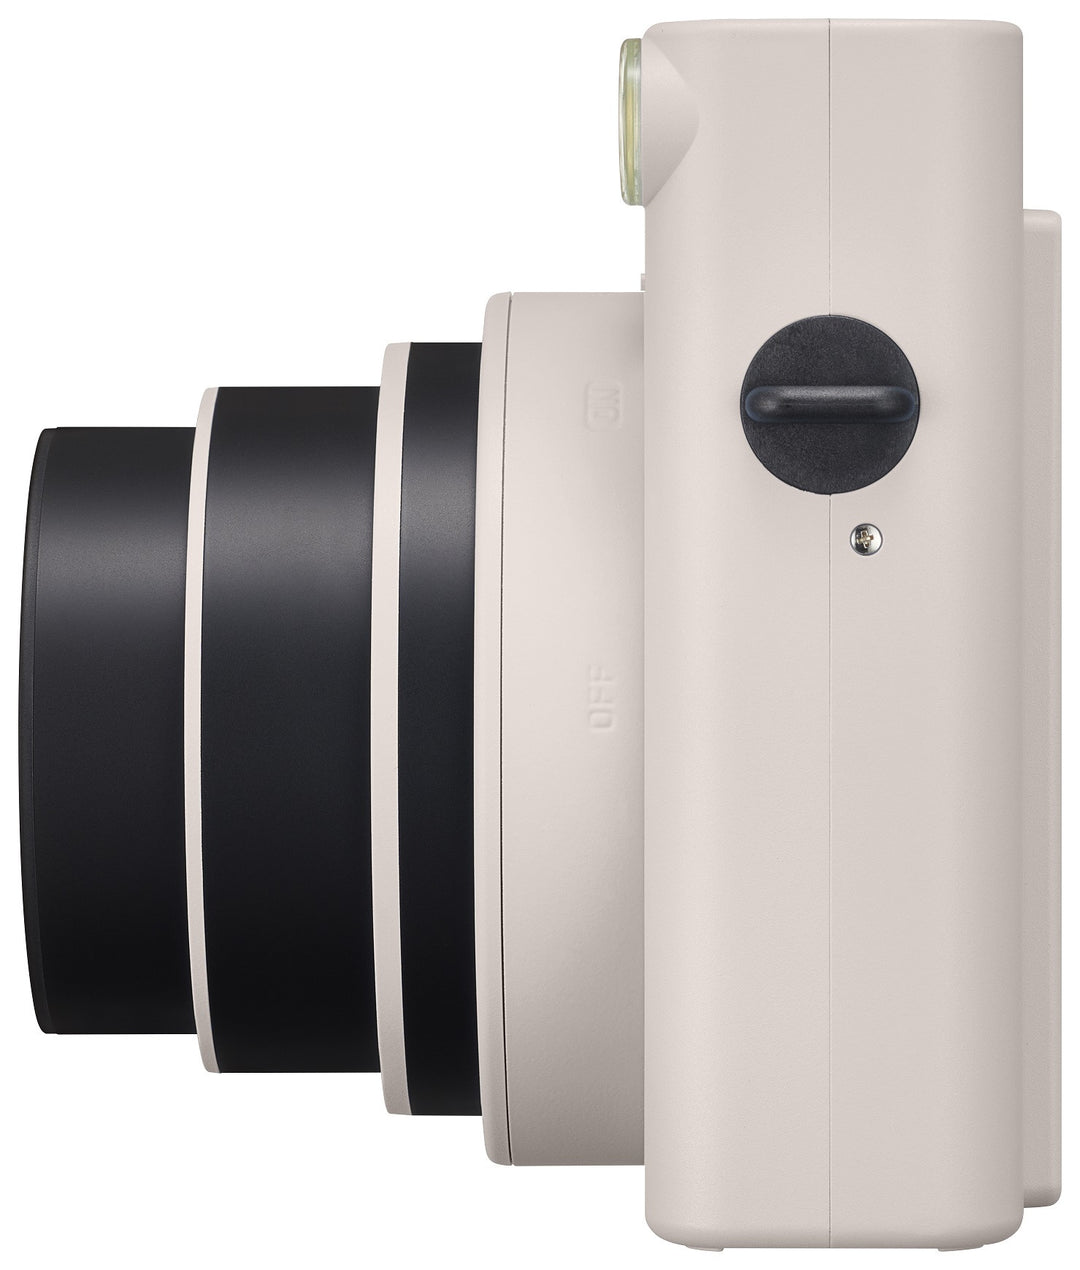 Fujifilm | Instax Square SQ1 Instant Camera - Chalk White | 600021805